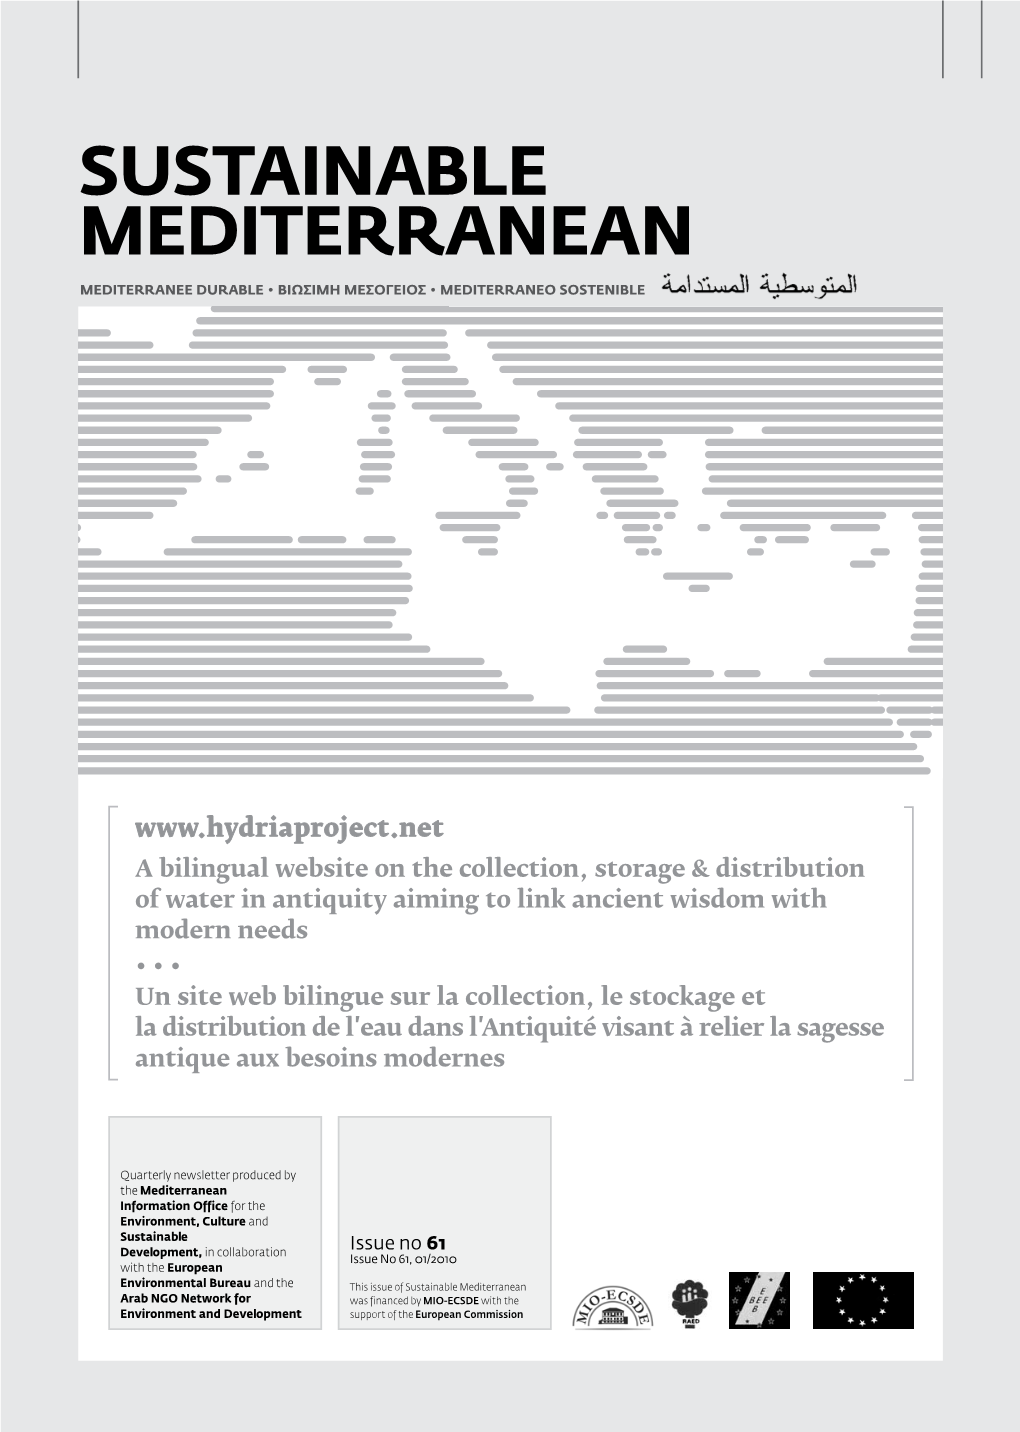 Sustainable Mediterranean, Issue No 61